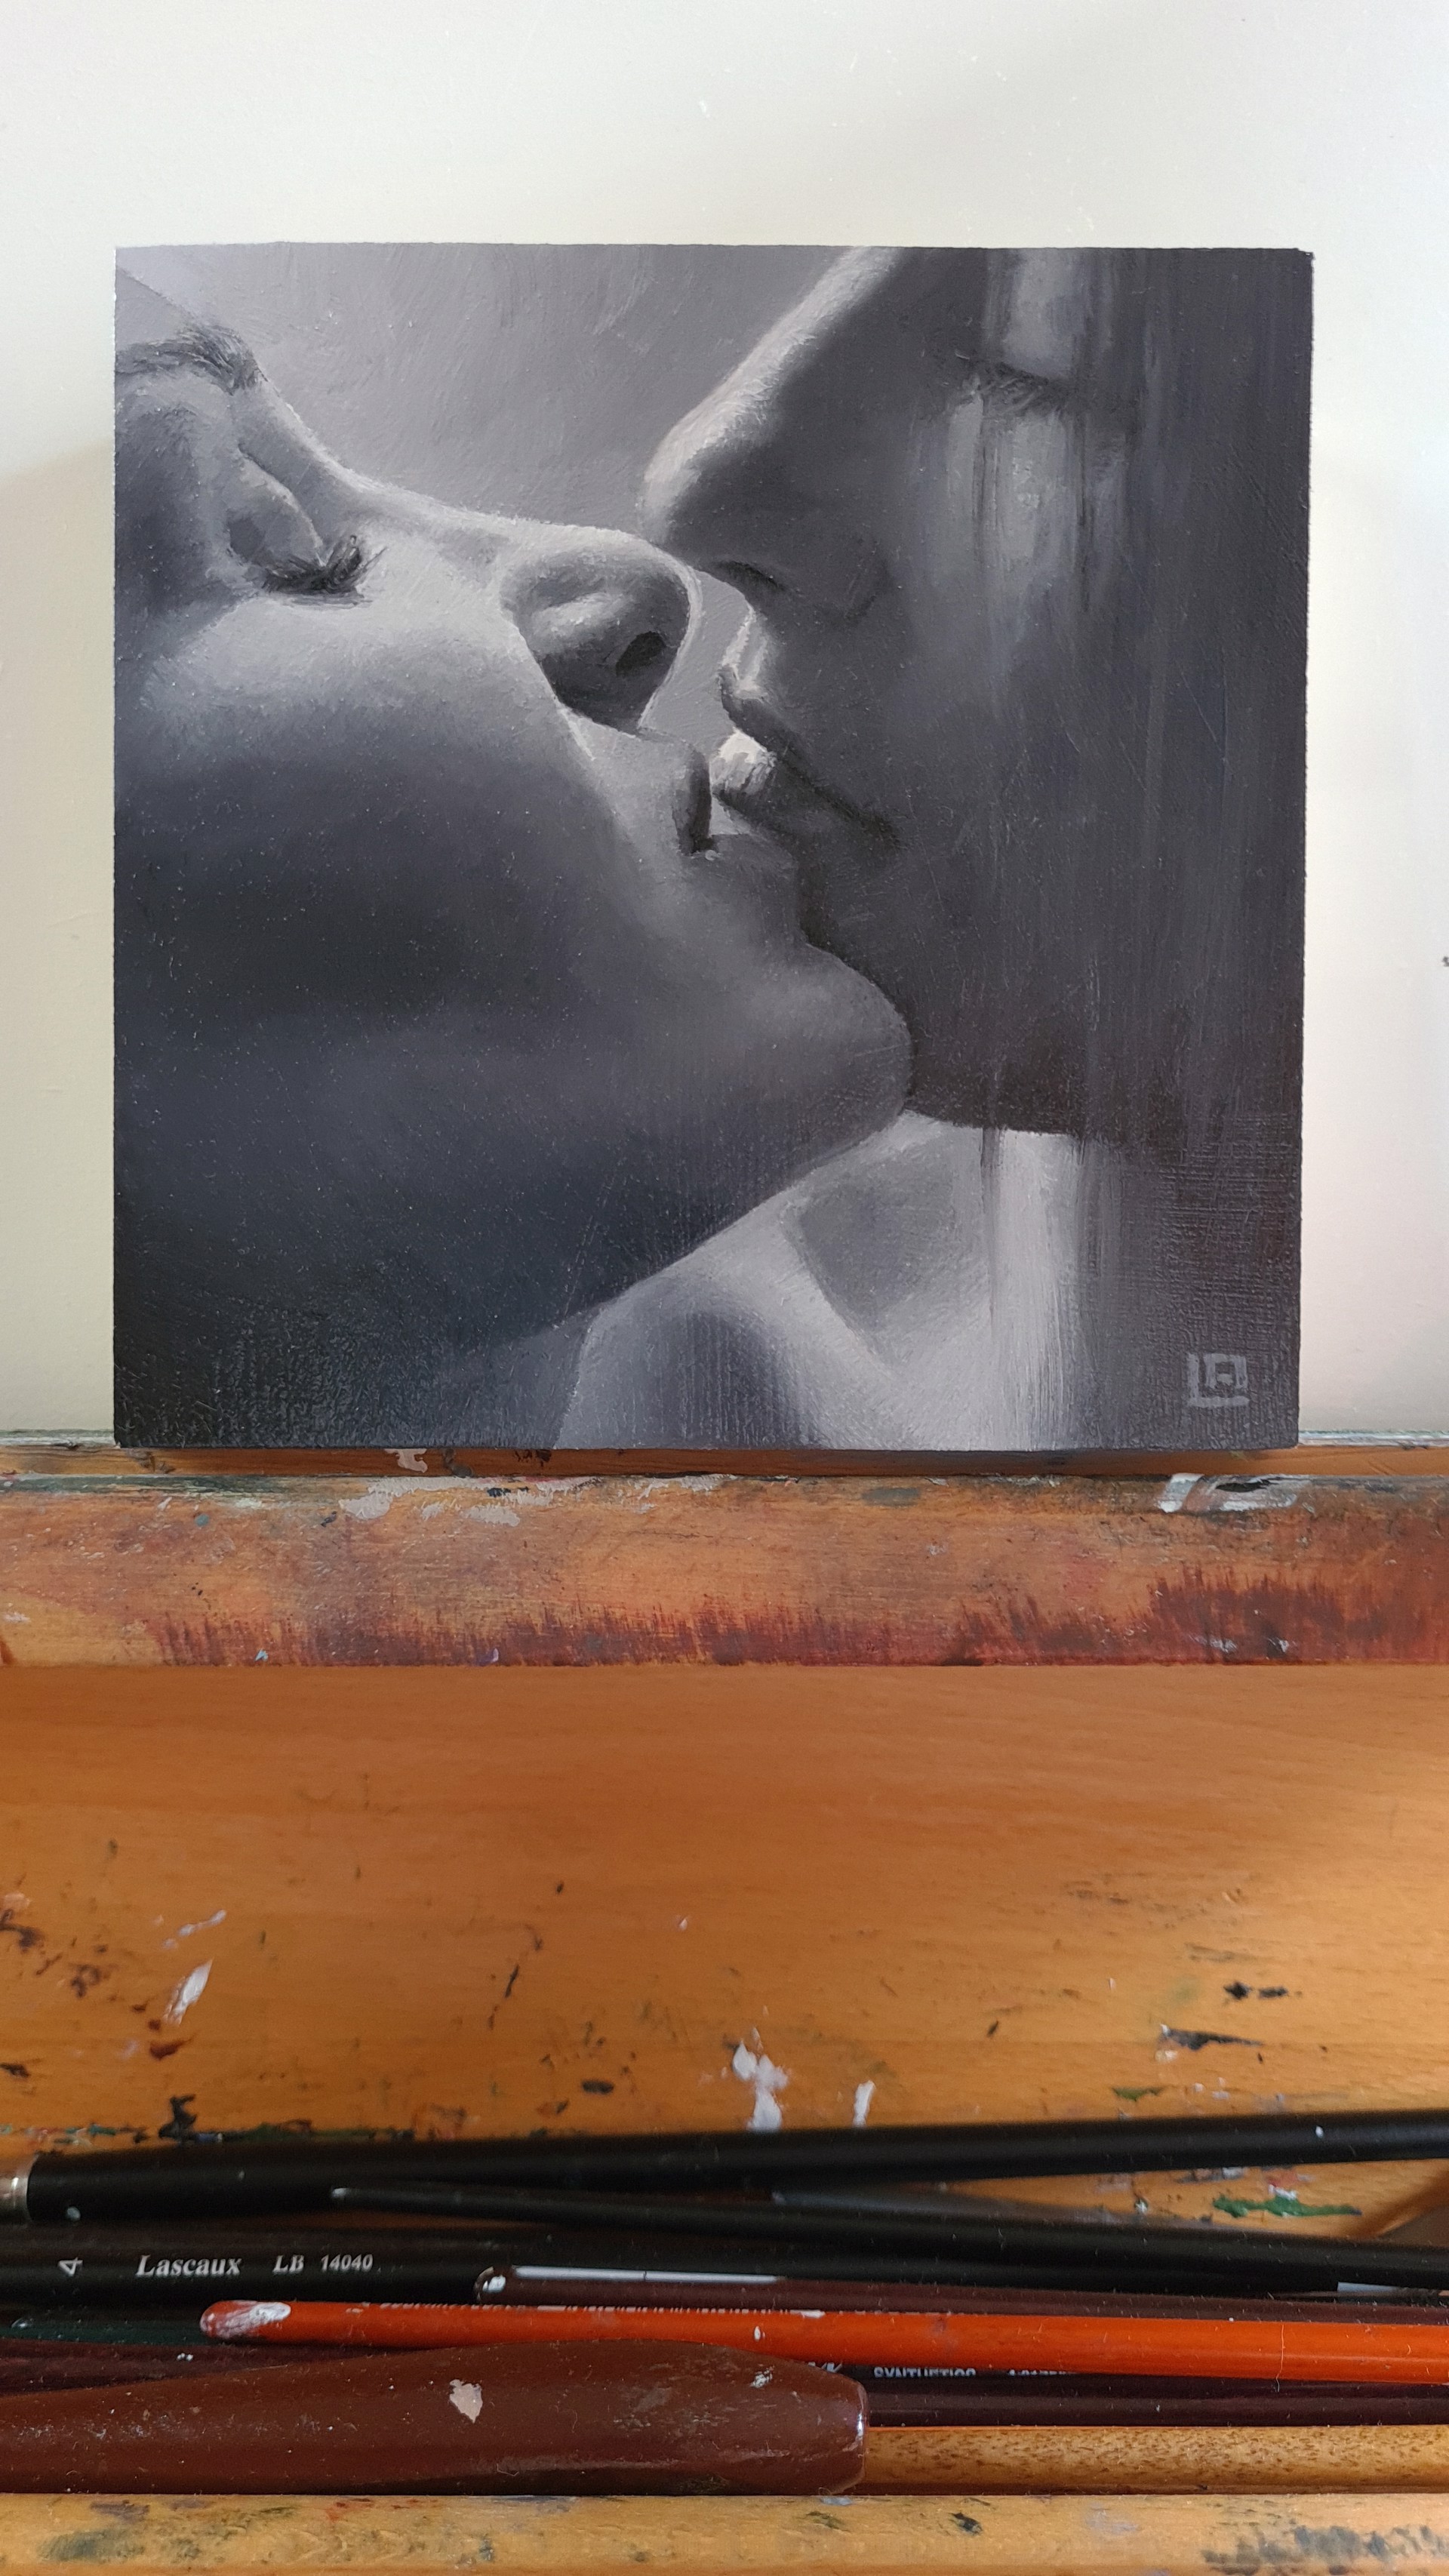 The Kiss #8 by Linda Adair